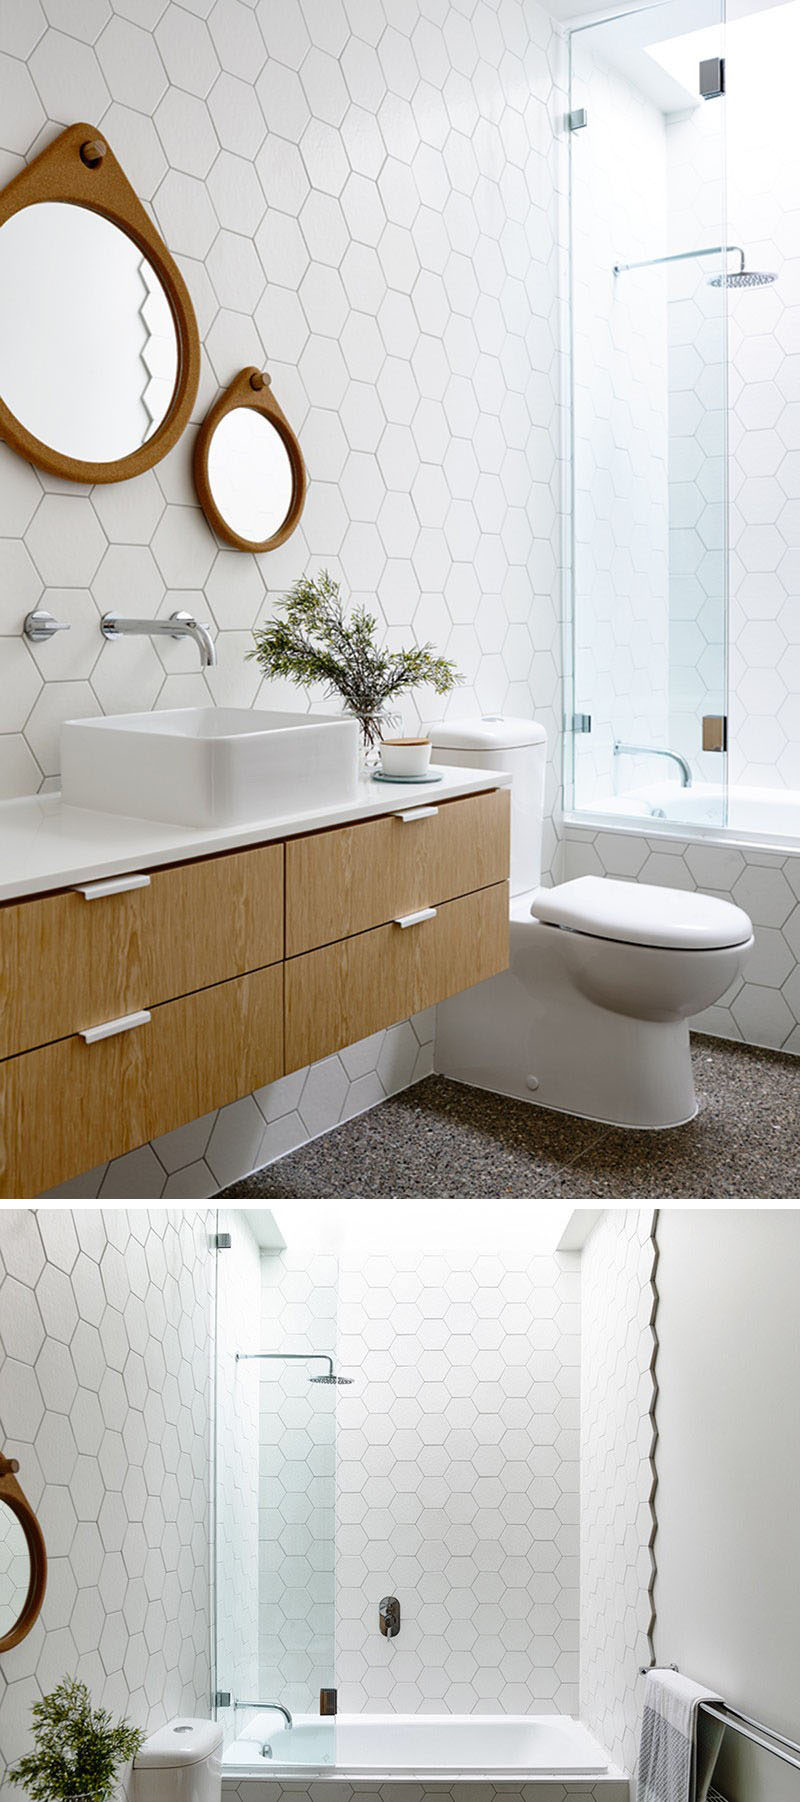 19 идей использования шестиугольников в дизайне интерьеров и архитектуре // Ванная комната в этом доме отделана белой шестиугольной плиткой от пола до потолка на стенах.